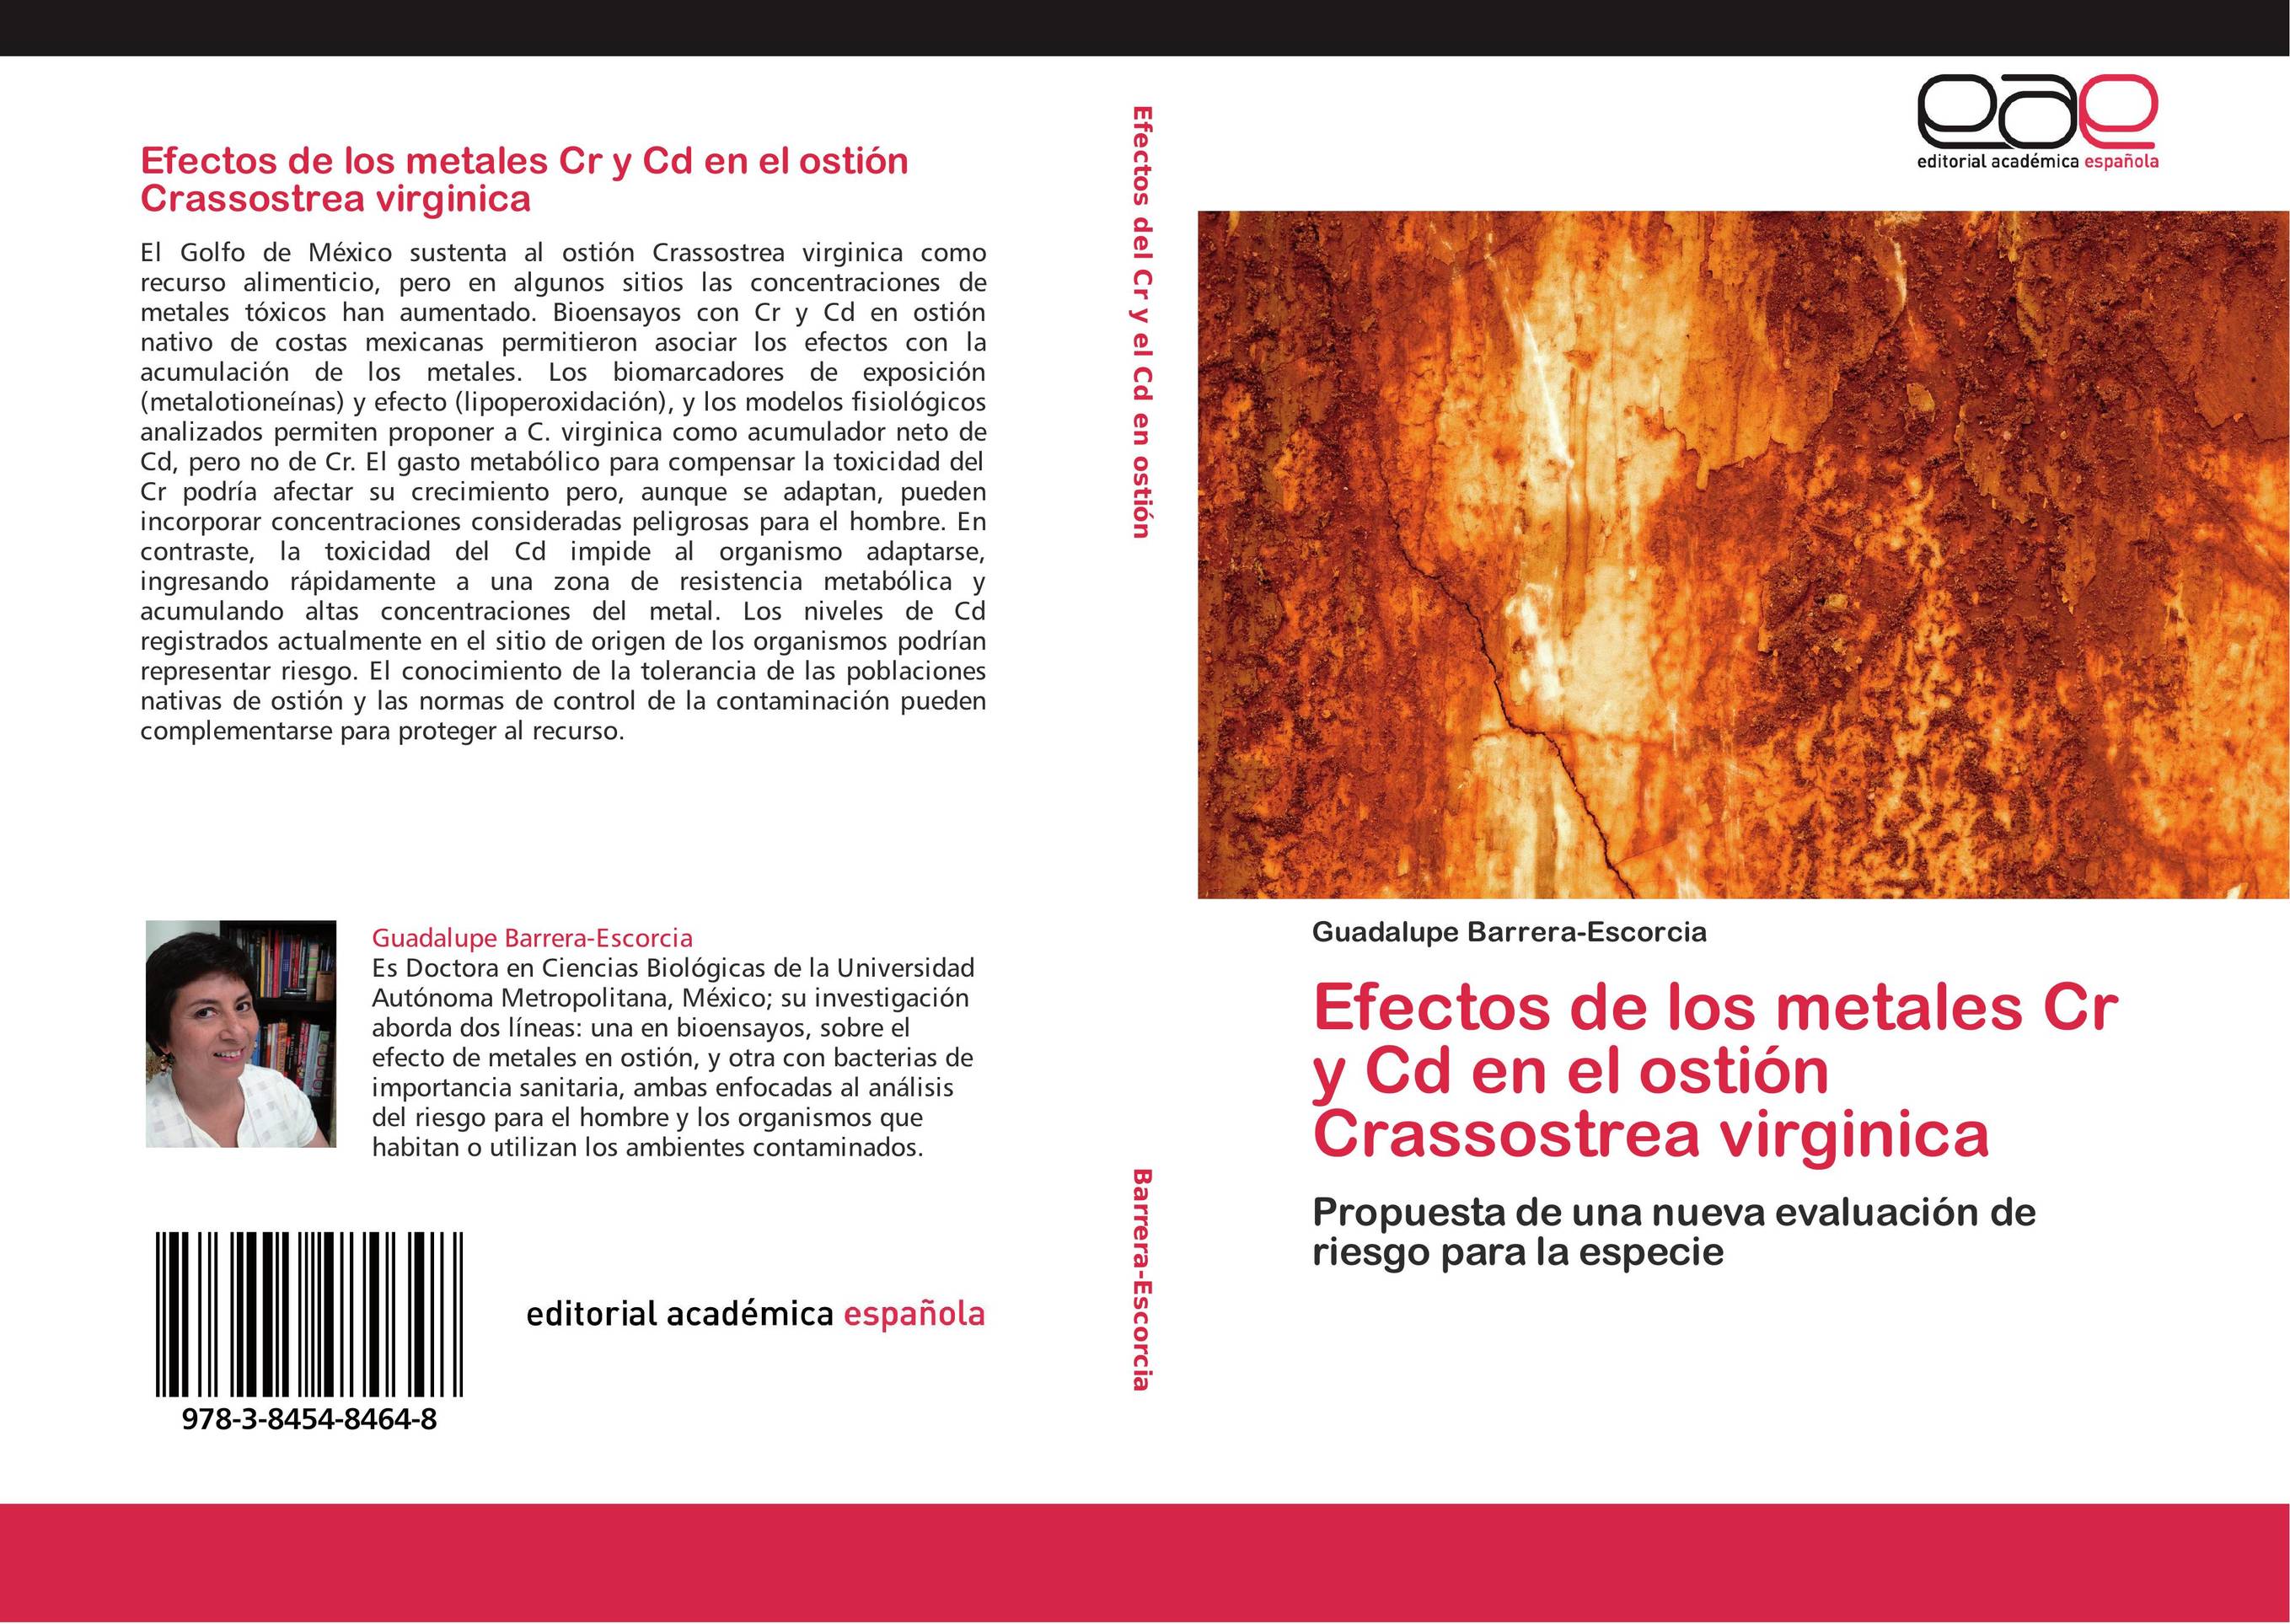 Efectos de los metales Cr y Cd en el ostión Crassostrea virginica